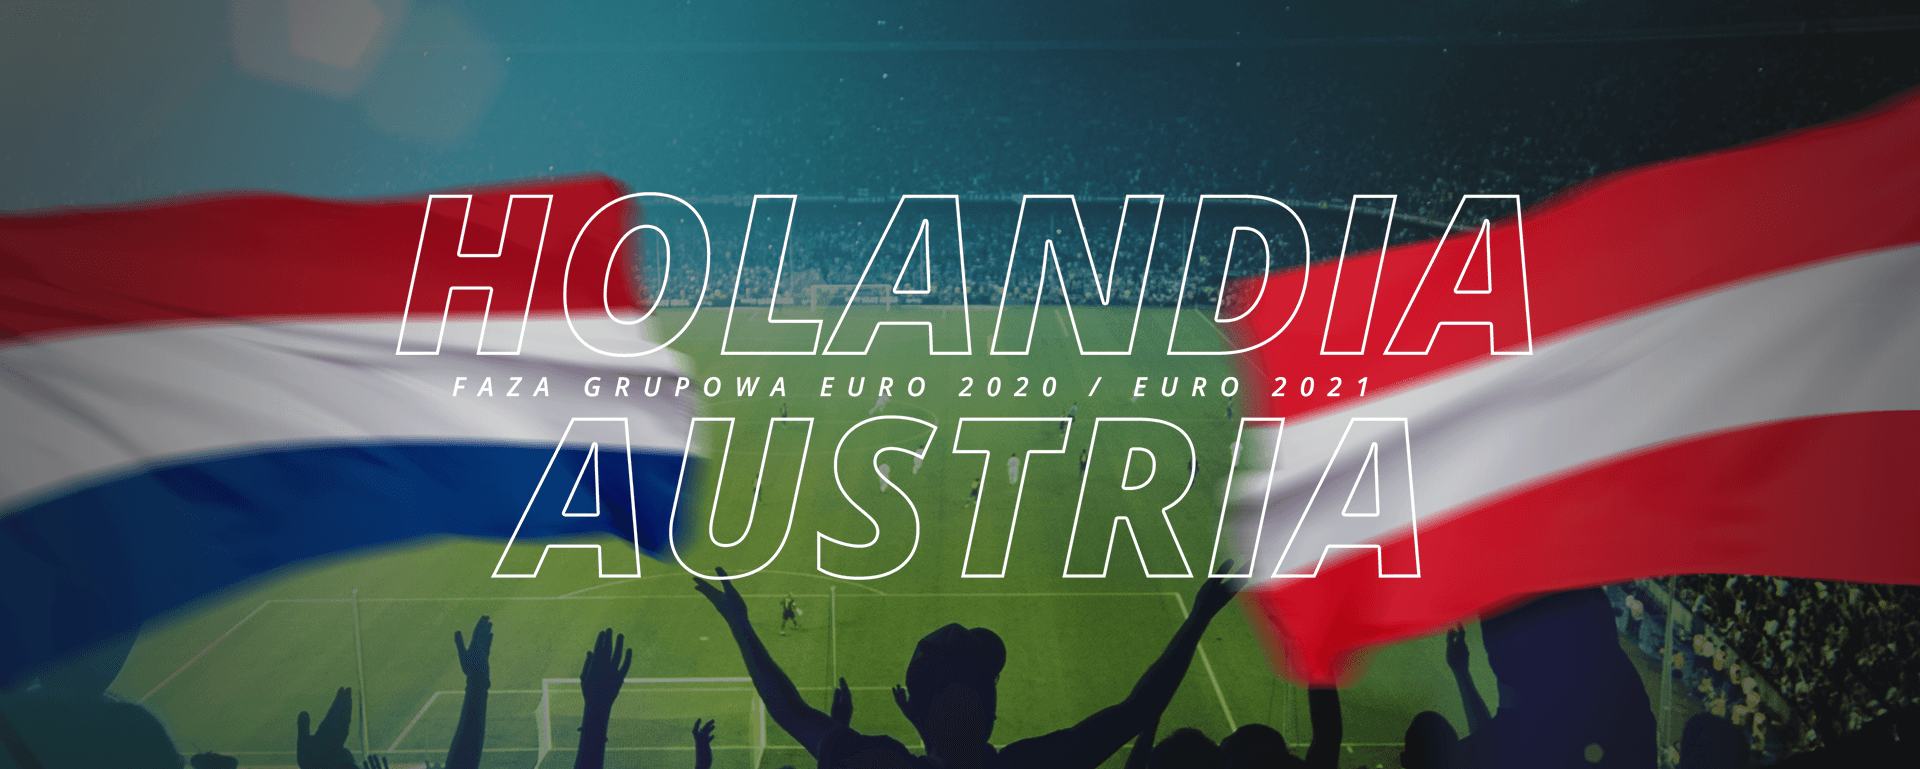 Holandia – Austria | faza grupowa Euro 2020 / Euro 2021